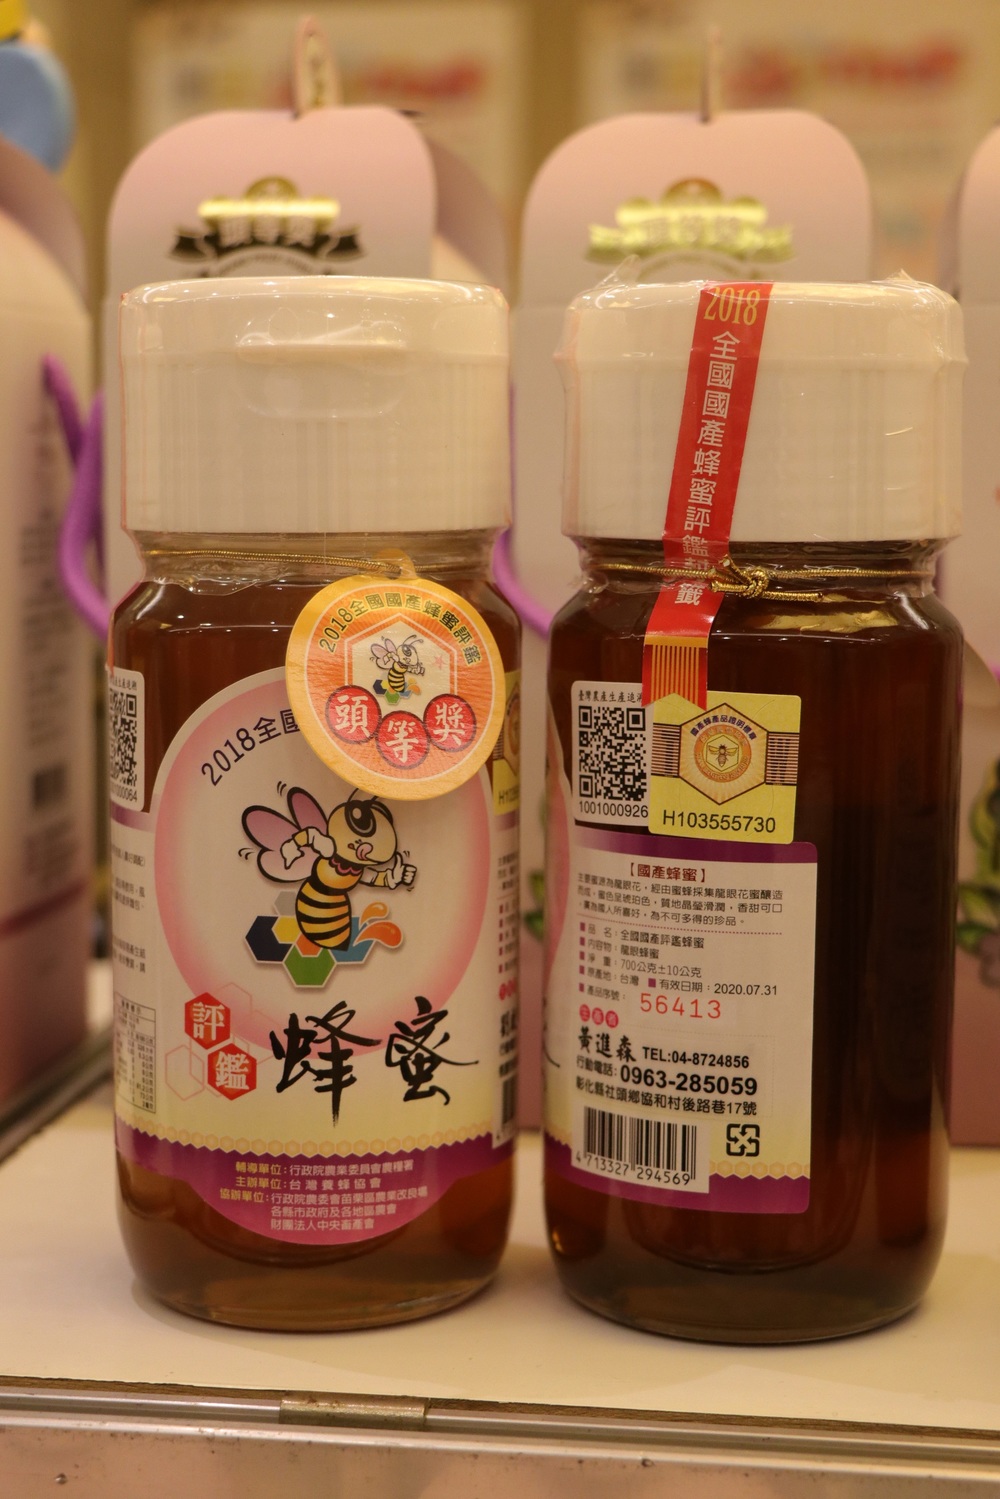 蜂蜜是營養豐富，芳香甜美的天然食品，消費者可以藉由QR Code充分掌握生產者資訊。